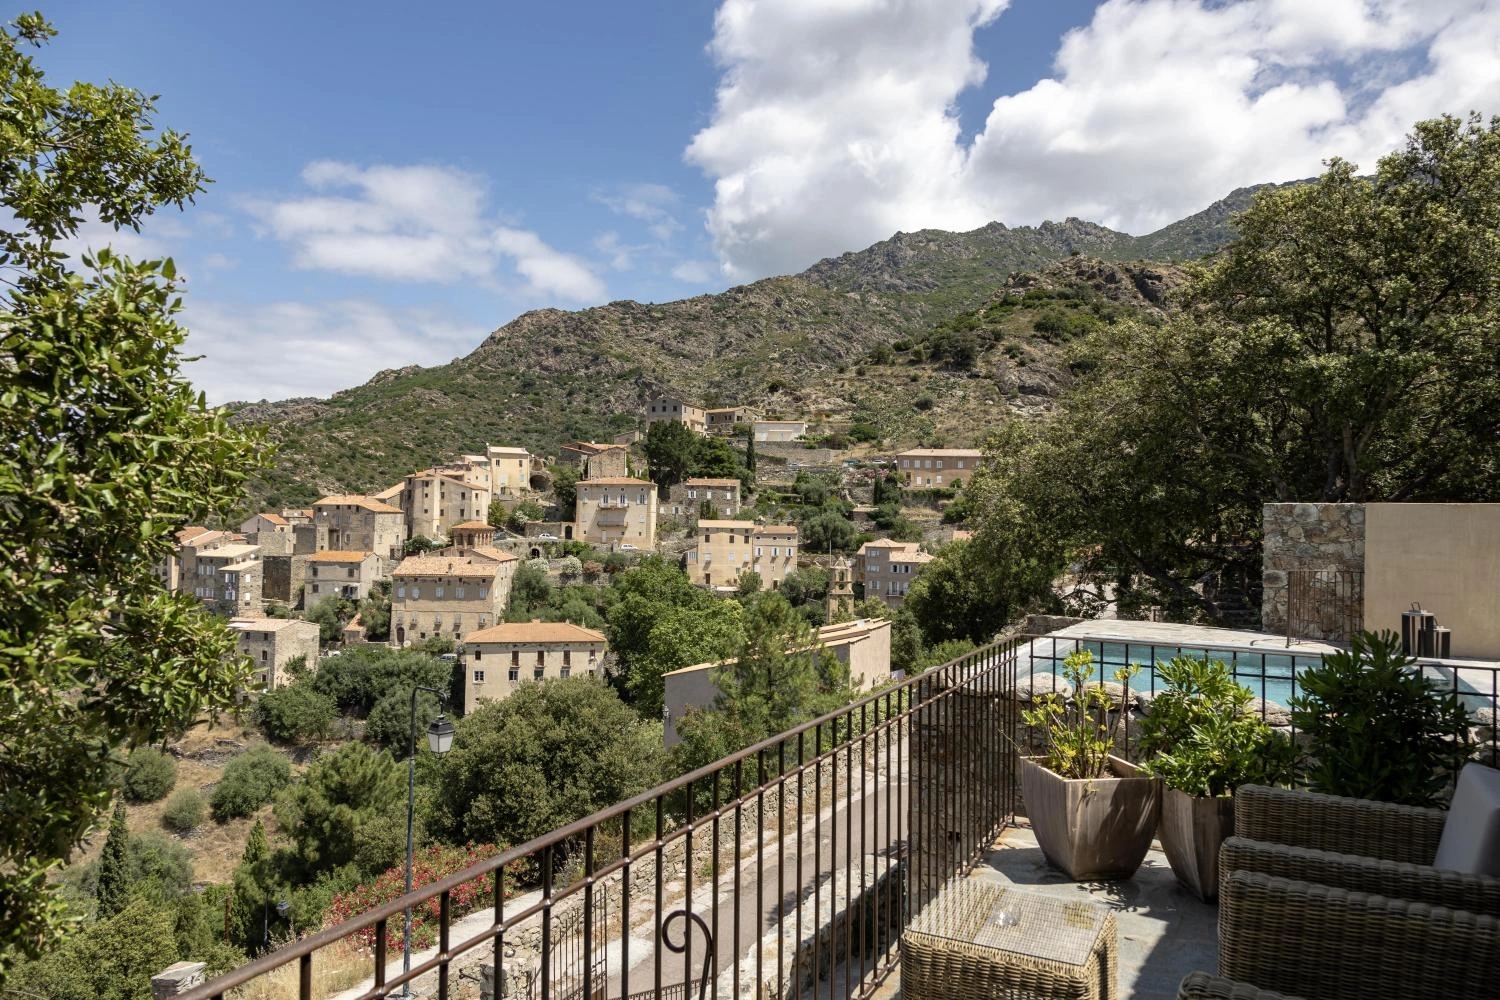 La vue époustouflante sur le village de Lama depuis les chambres à louer de l'Hôtel Case Latine en Corse